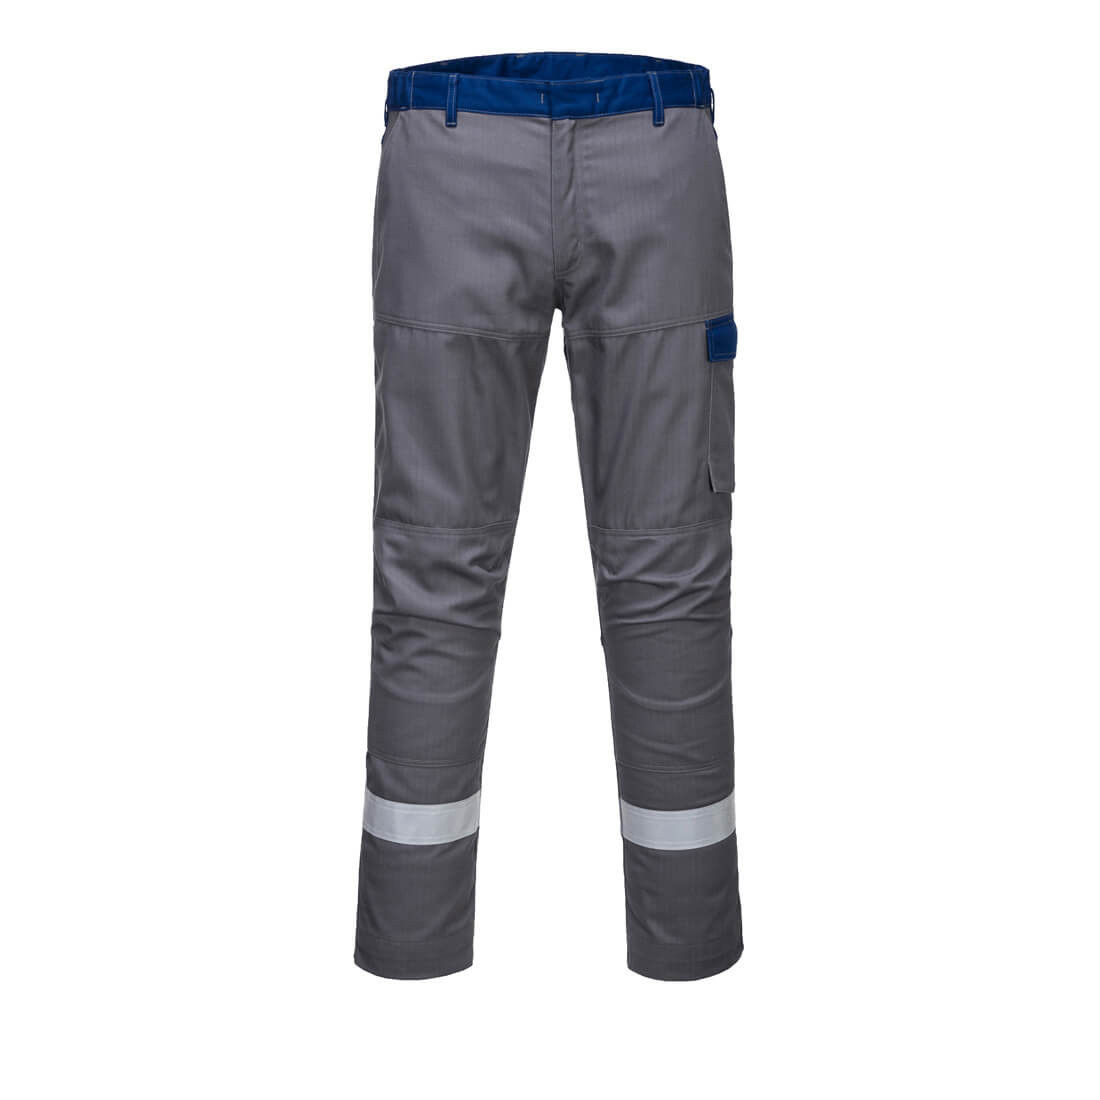 Pantalon Bizflame Ultra Bicolore - Les vêtements de protection